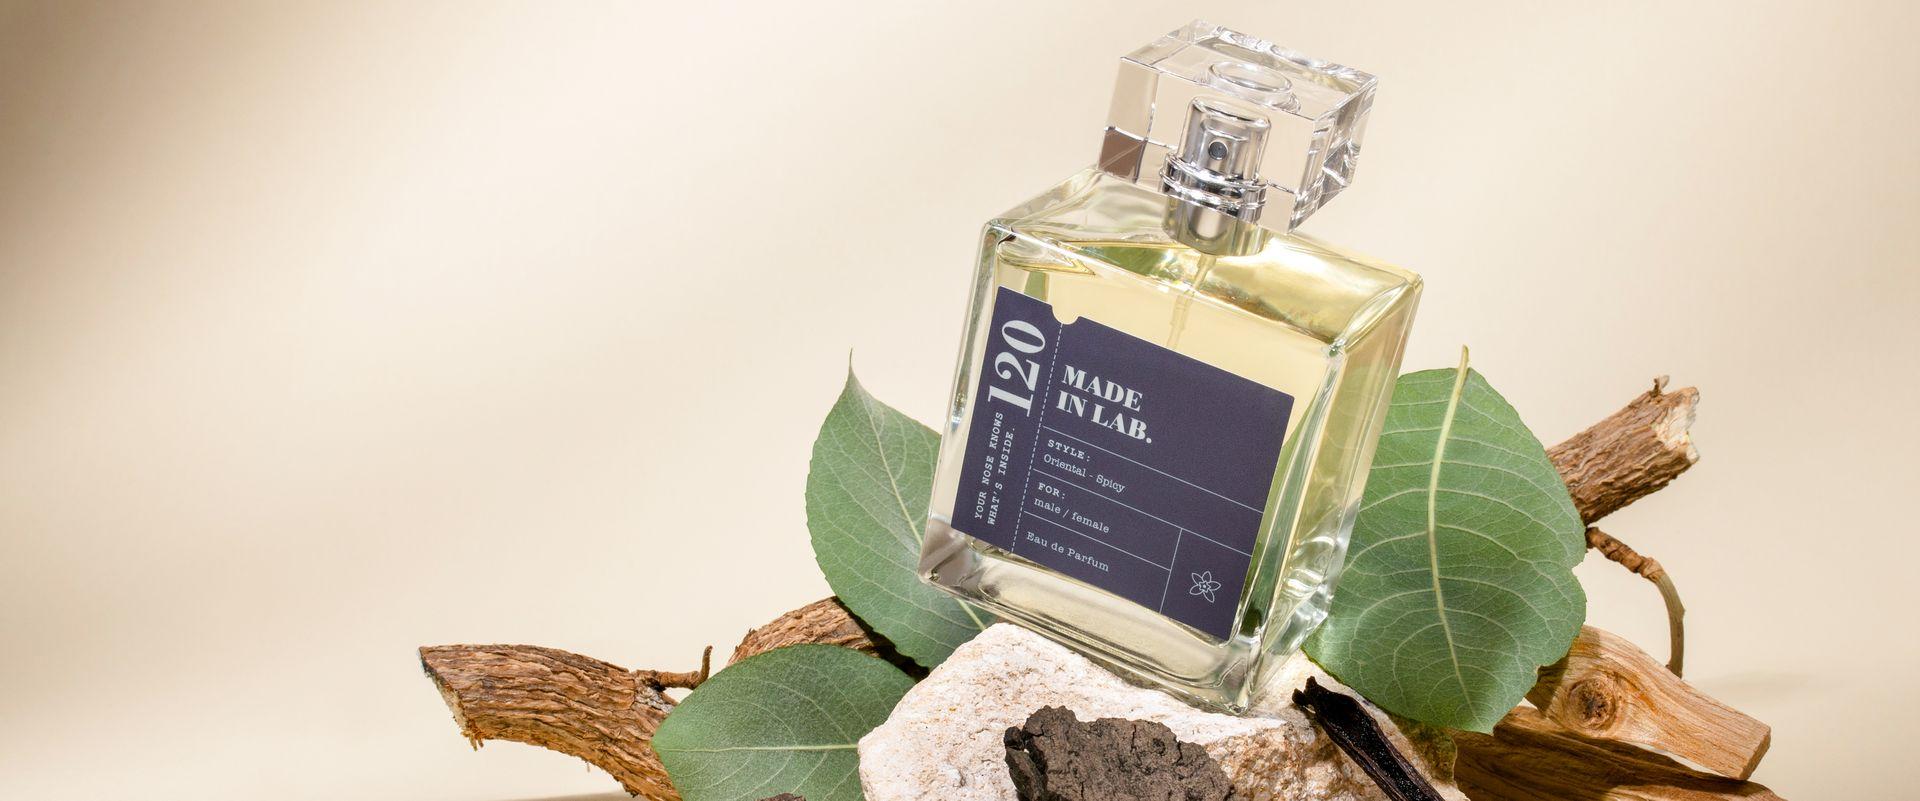 Męskie perfumy nawiązujące do najlepszych klasyków od Made in Lab